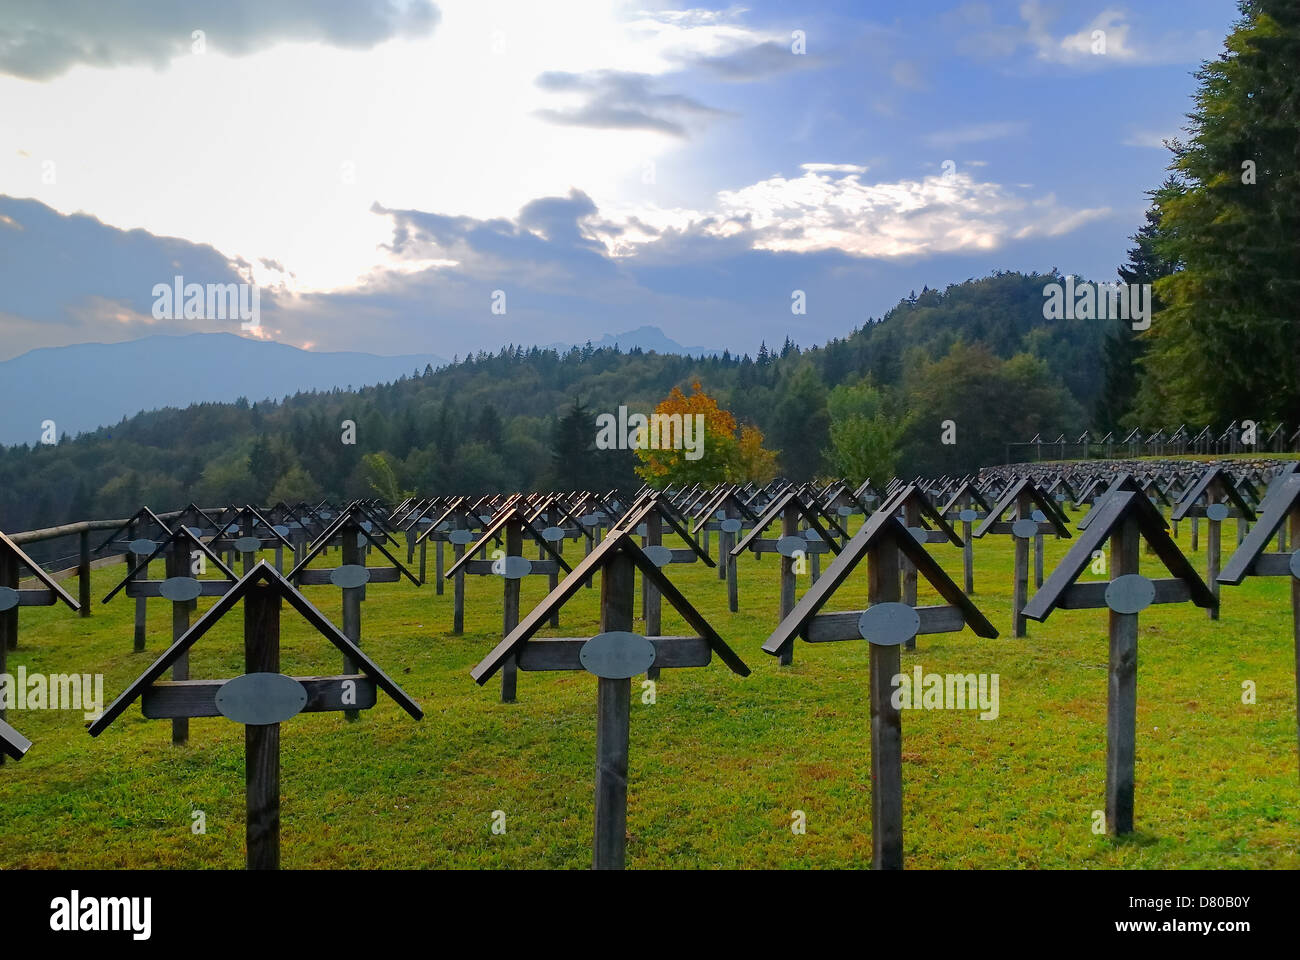 La primera guerra mundial. Trentino Alto Adige, Italia: el cementerio de guerra austríaco Slaghenaufi.El cementerio en el cercano lago Lavarone. Foto de stock